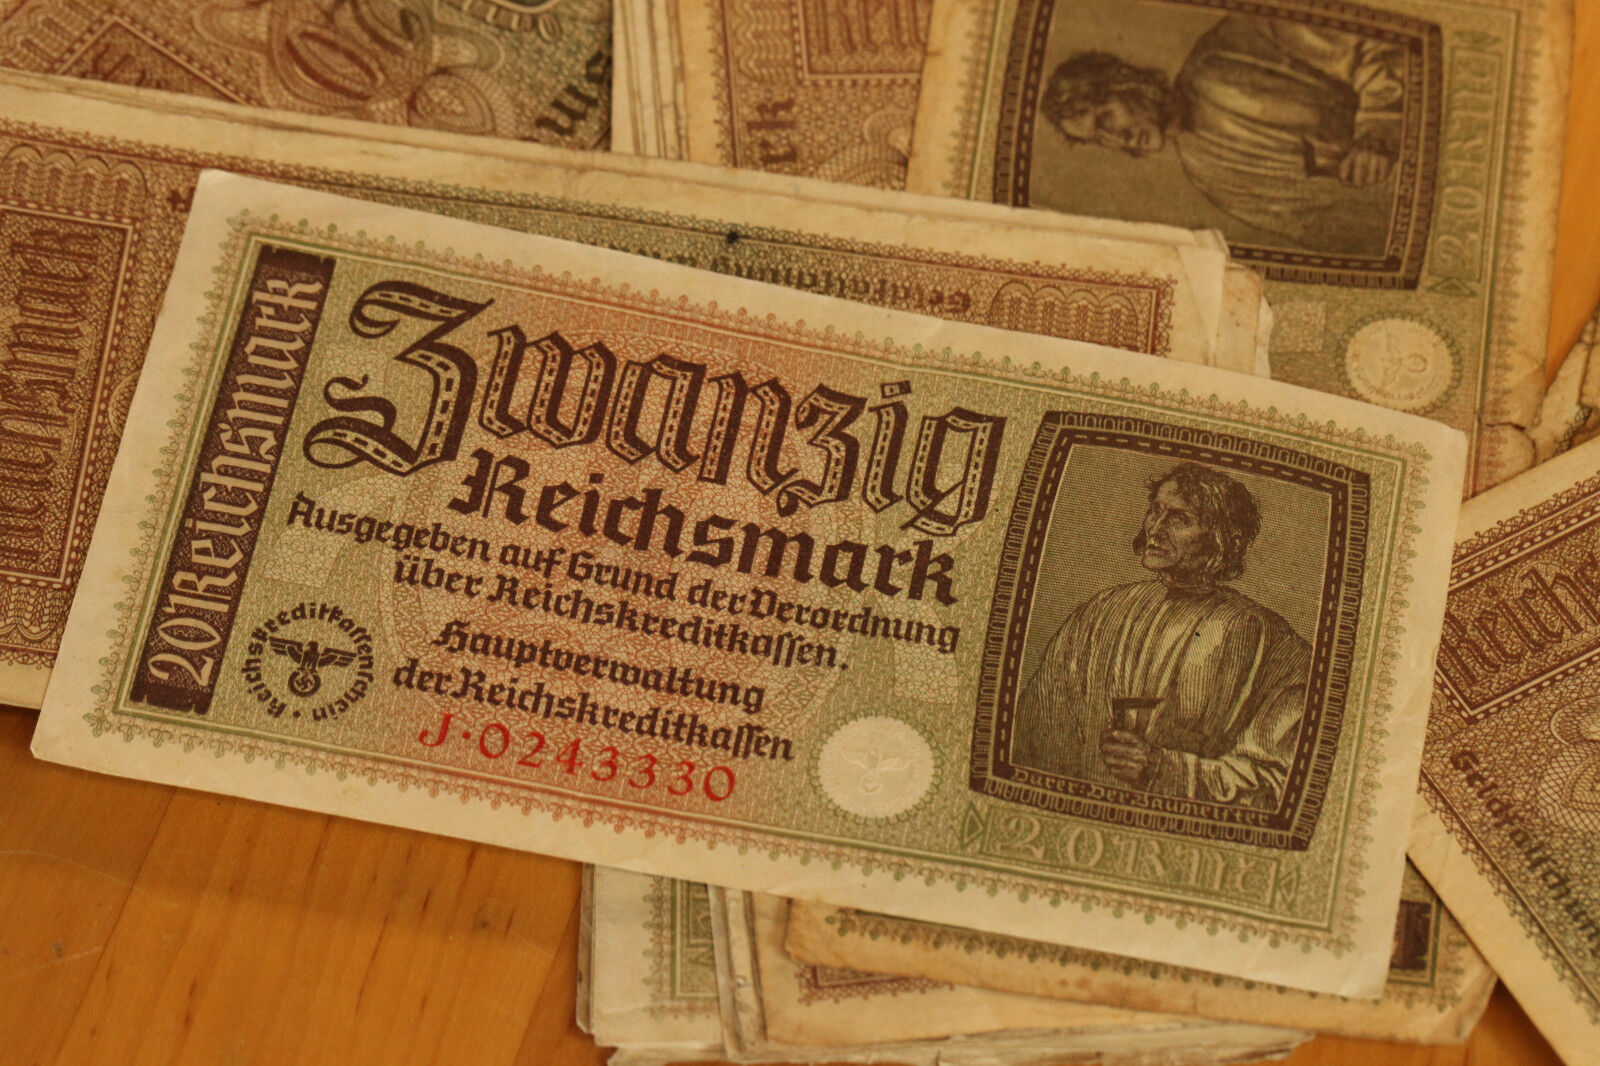 20 REICHSMARK NAZI GERMANY CURRENCY GERMAN BANKNOTE NOTE MONEY BILL SWASTIKA WW2